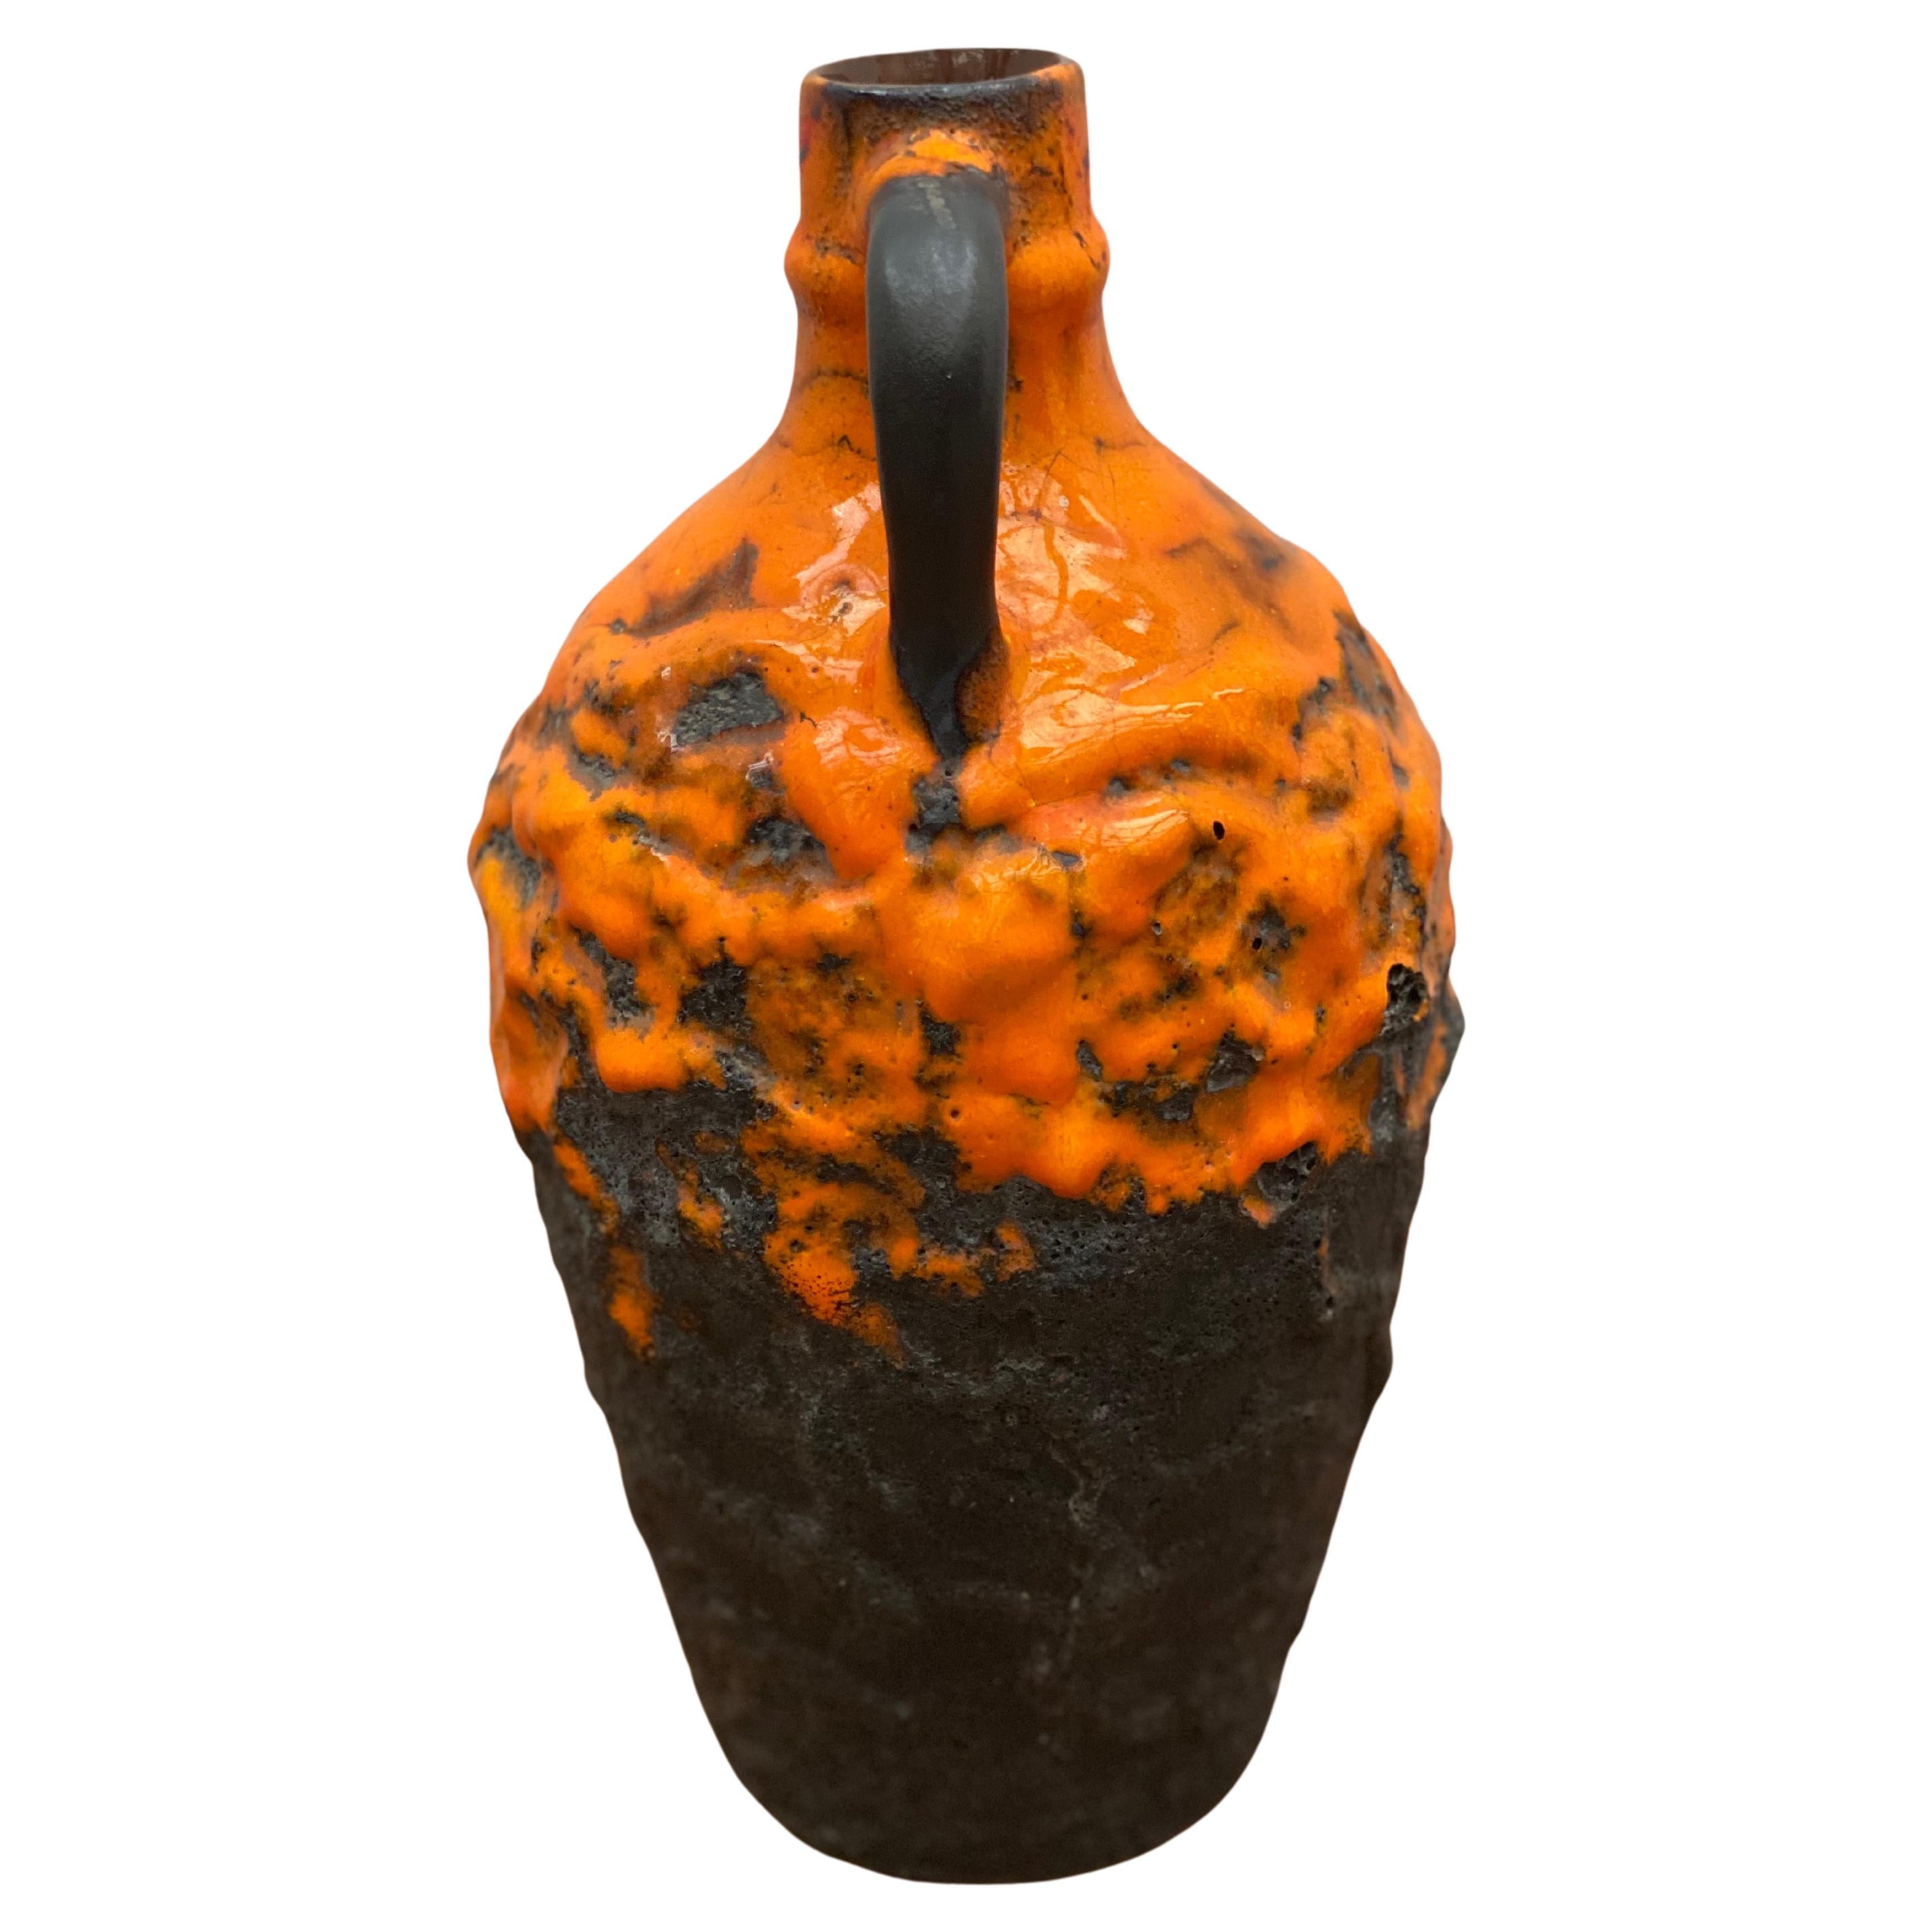 Un vase en céramique orange, marron gras lava conçu et fabriqué en Allemagne par Carstens en parfait état signé sur le fond avec W. Germany.
La couleur orange vif est un must pour votre intérieur.